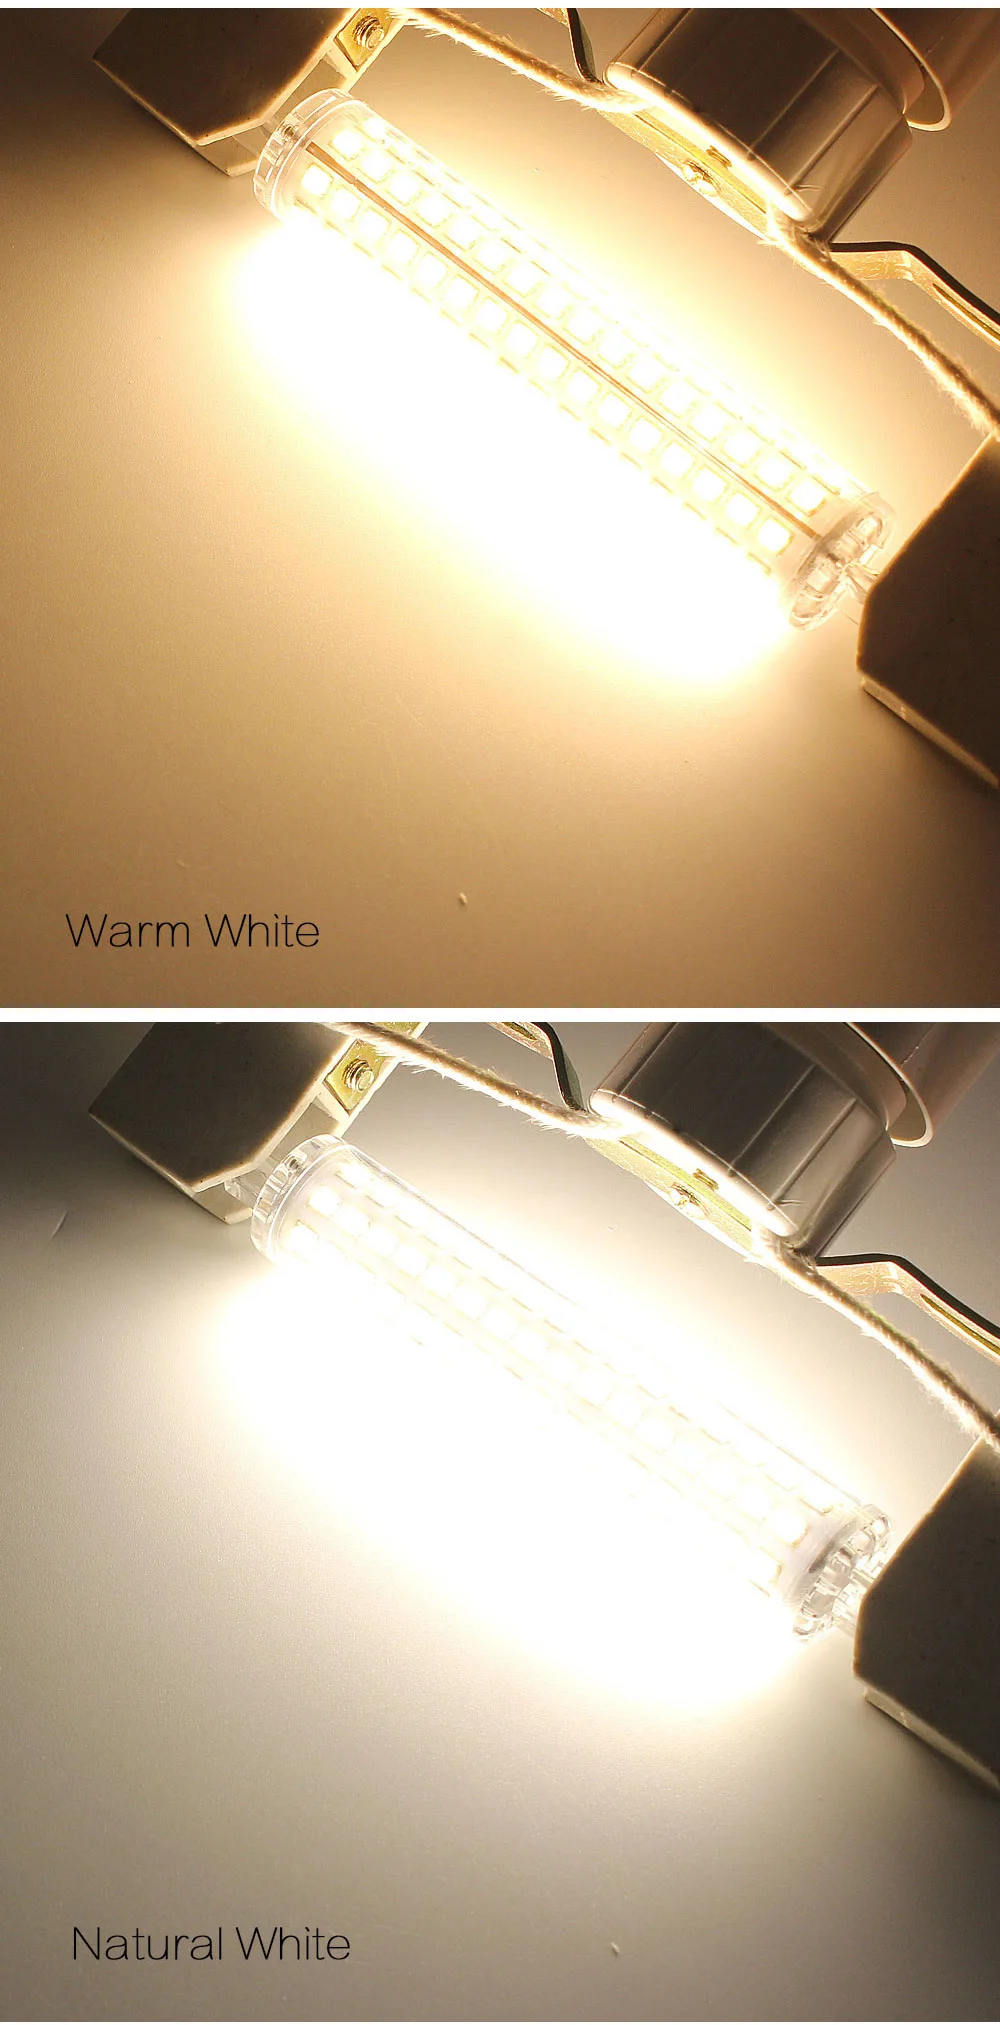 ANBLUB R7S светодиодный светильник 10 Вт 78 мм 15 Вт 118 мм SMD 2835 светильник для замены 30 Вт 40 Вт 50 Вт галогенная лампа Точечный светильник AC 220 В натуральный белый/теплый